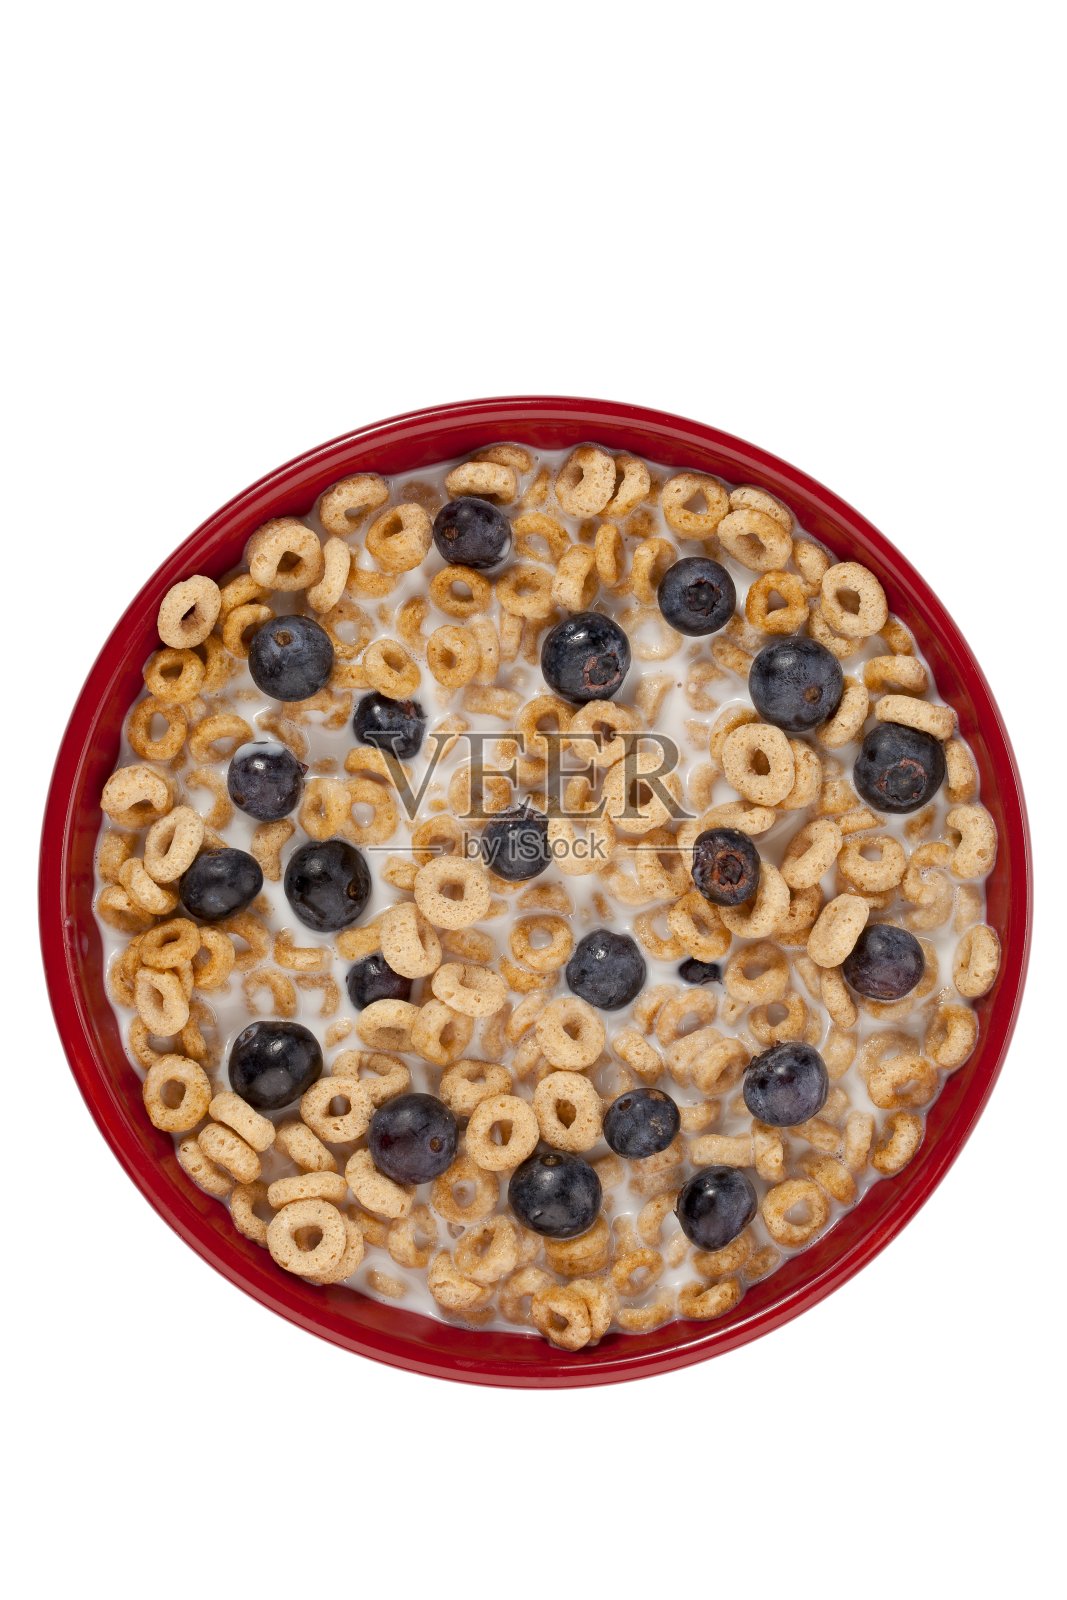 麦片和蓝莓放在一个红色的碗里照片摄影图片